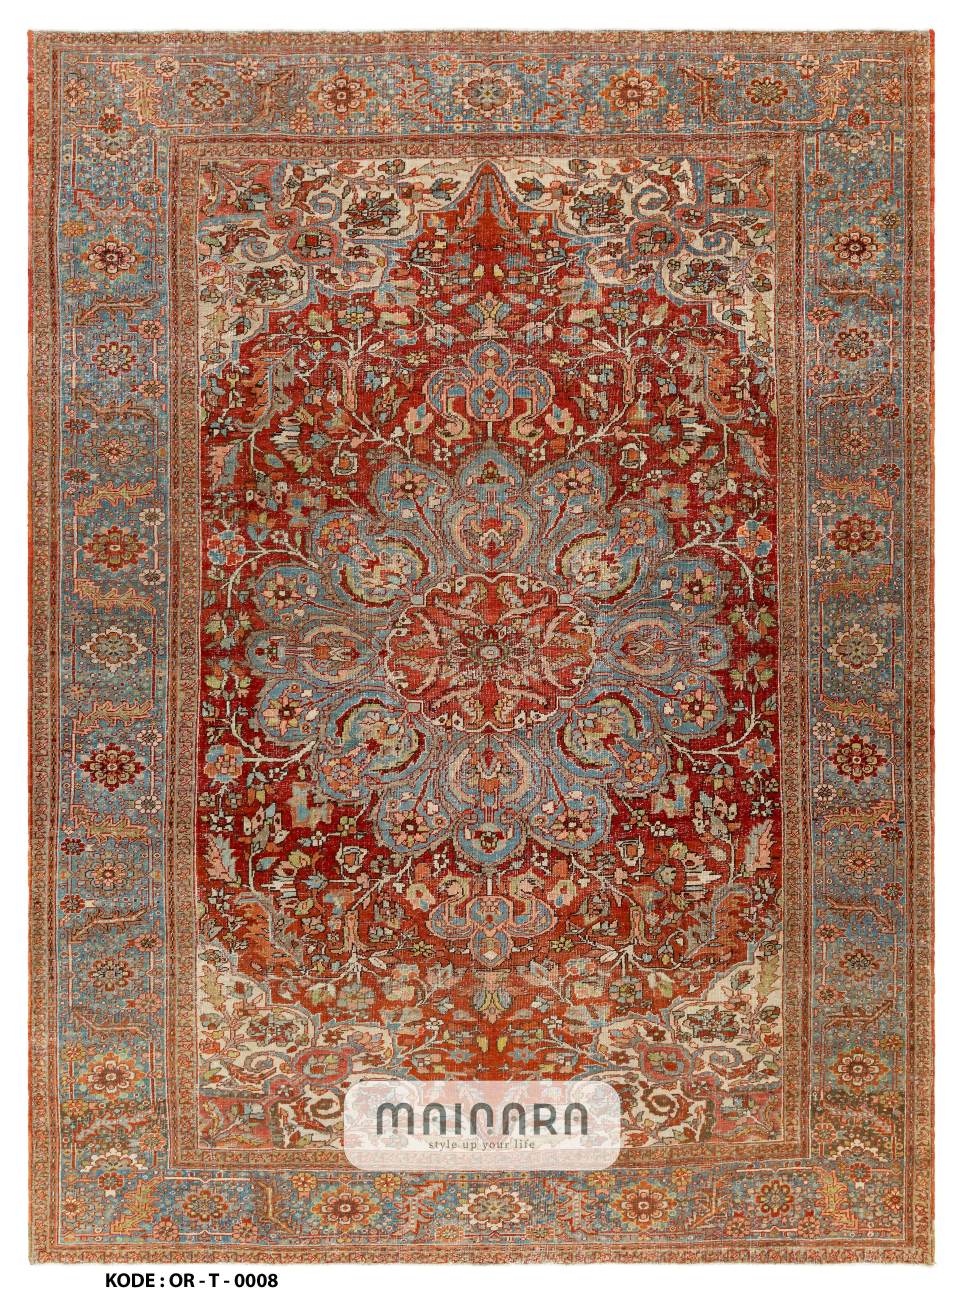 Karpet Tradisional (OR-T-0008) - Orange,Red